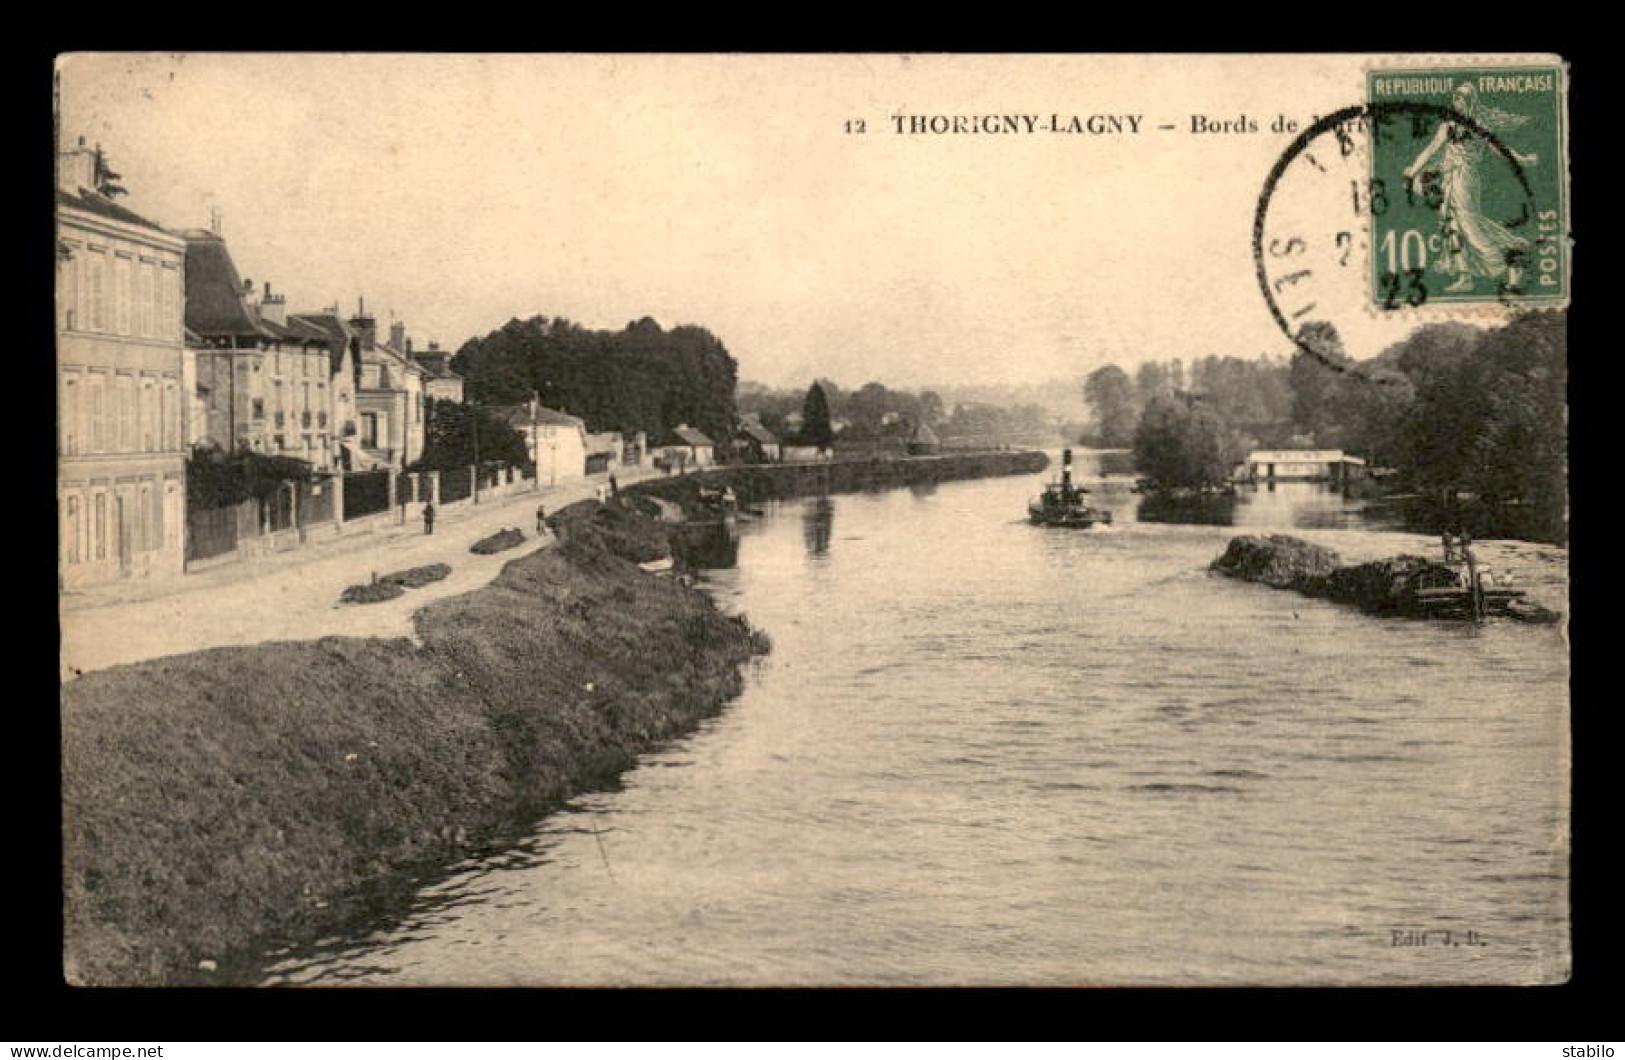 77 - THORIGNY-LAGNY - BORDS DE MARNE - TRAIN DE PENICHES - REMORQUEUR - Lagny Sur Marne